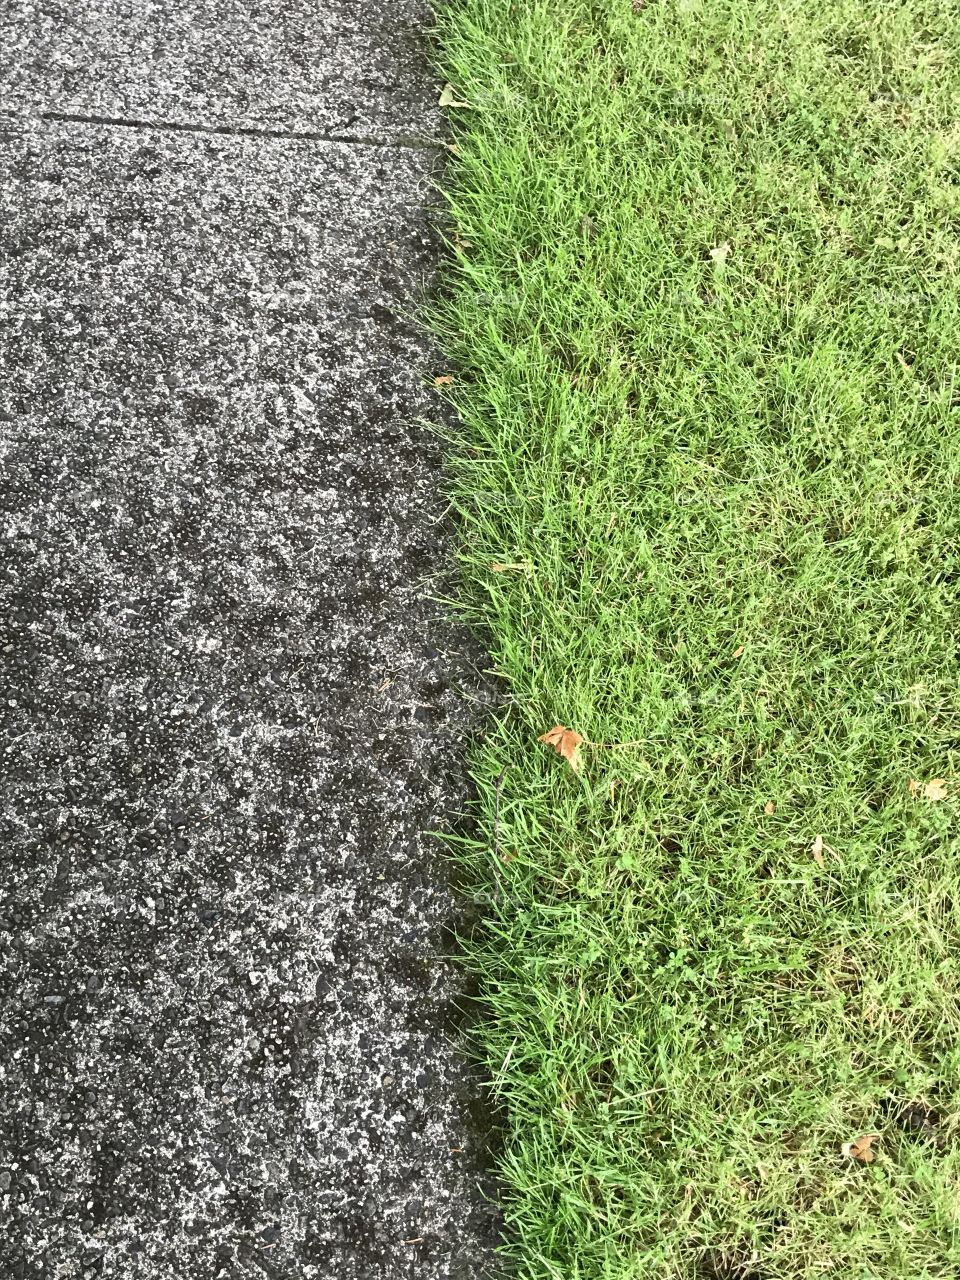 Sidewalk versus grass